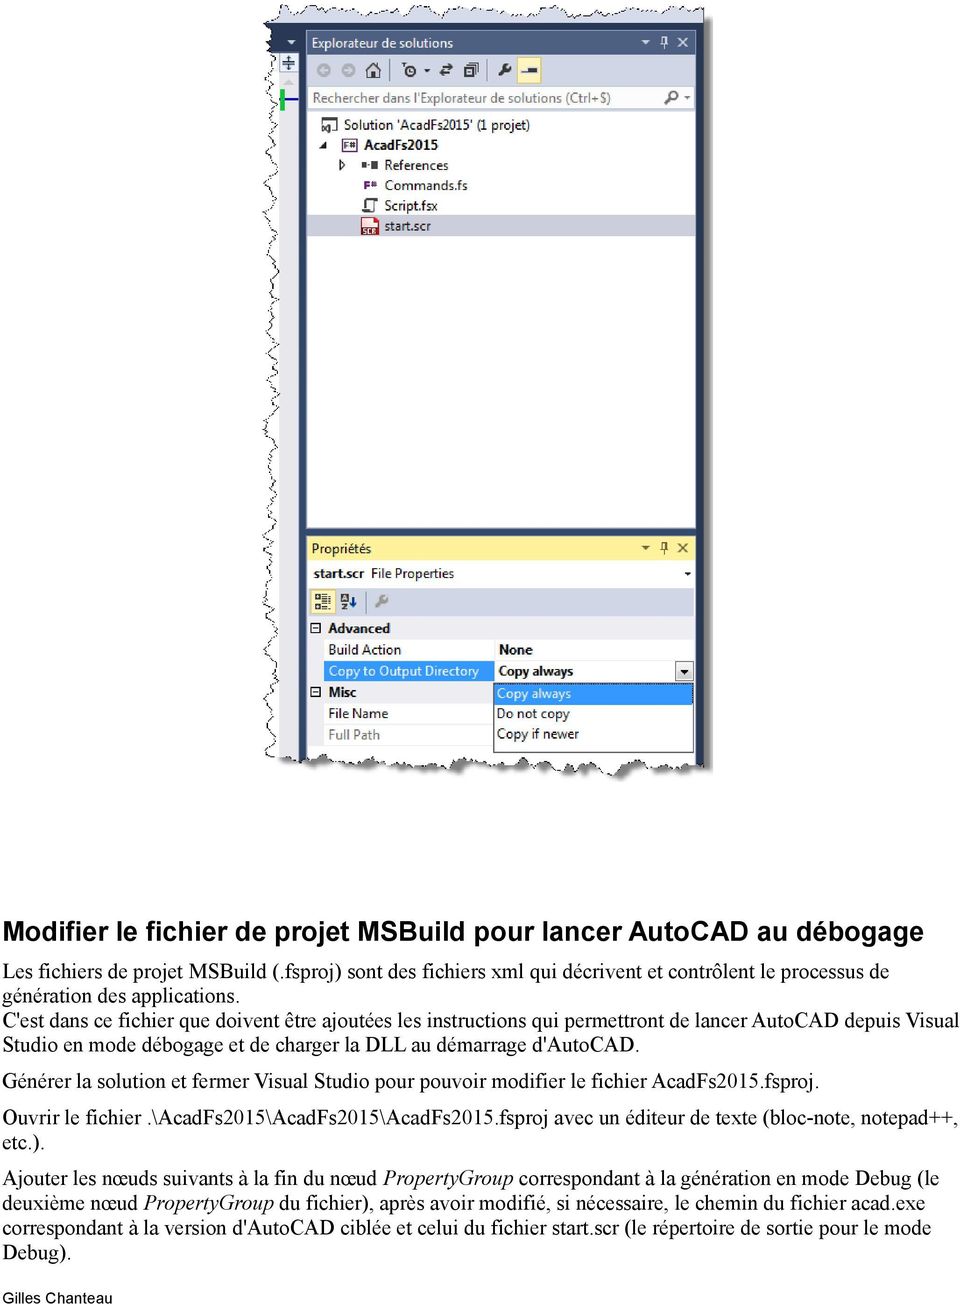 C'est dans ce fichier que doivent être ajoutées les instructions qui permettront de lancer AutoCAD depuis Visual Studio en mode débogage et de charger la DLL au démarrage d'autocad.